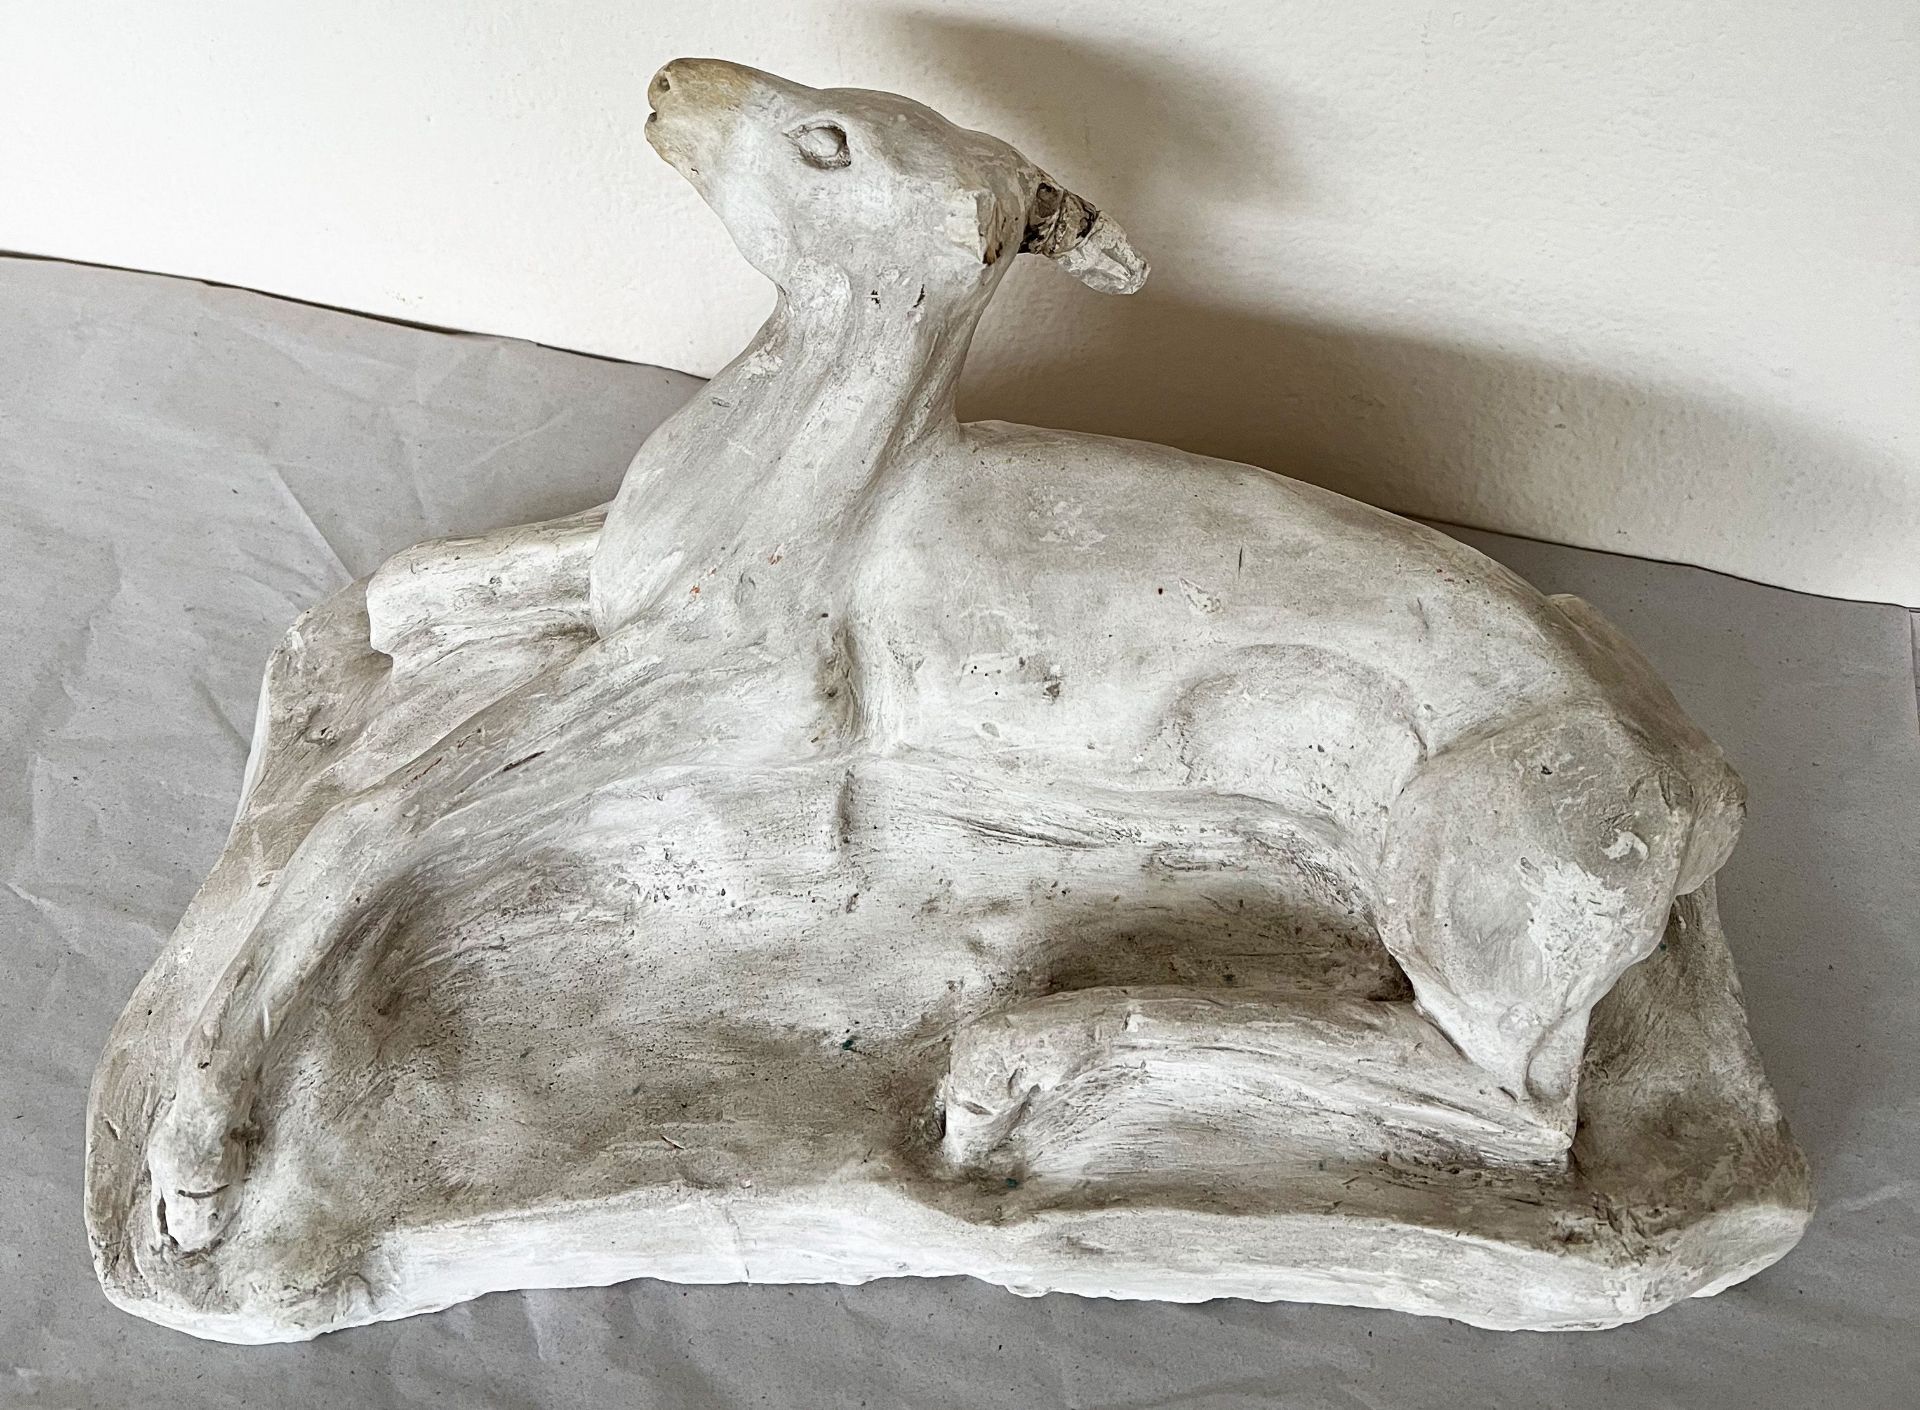 Reh, Stuck/ Roe deer, stucco. Bildhauer aus Tübingen, ein Ohr fehlt, Altersspuren, 42 x 24 x 20 cm - Image 5 of 6